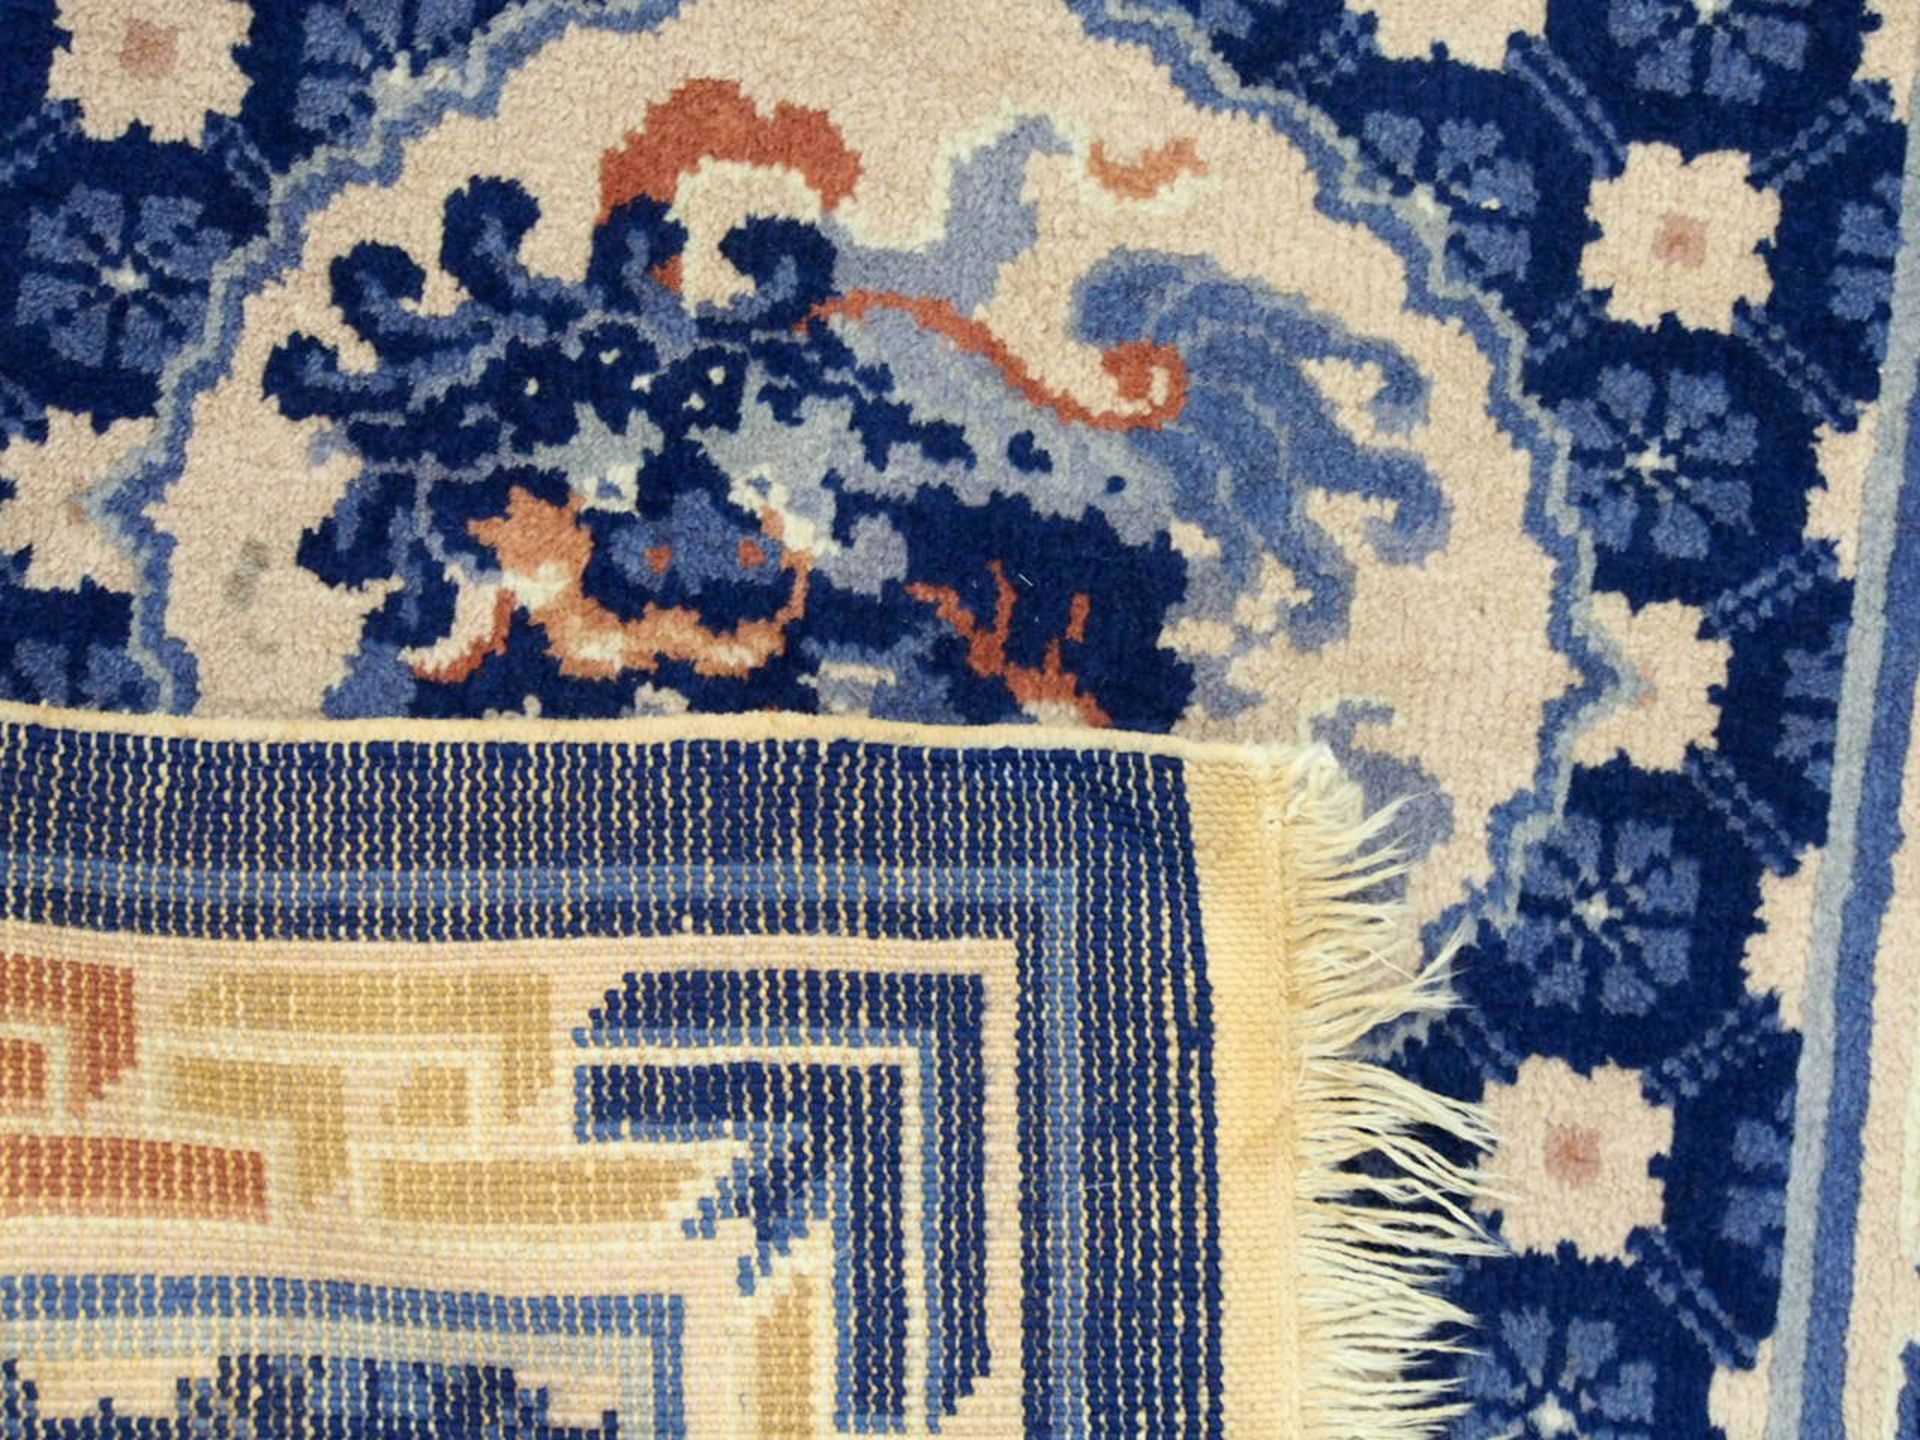 Paar Teppiche China, 91 x 63 cm, Zustand C, um 1920 - Bild 2 aus 2